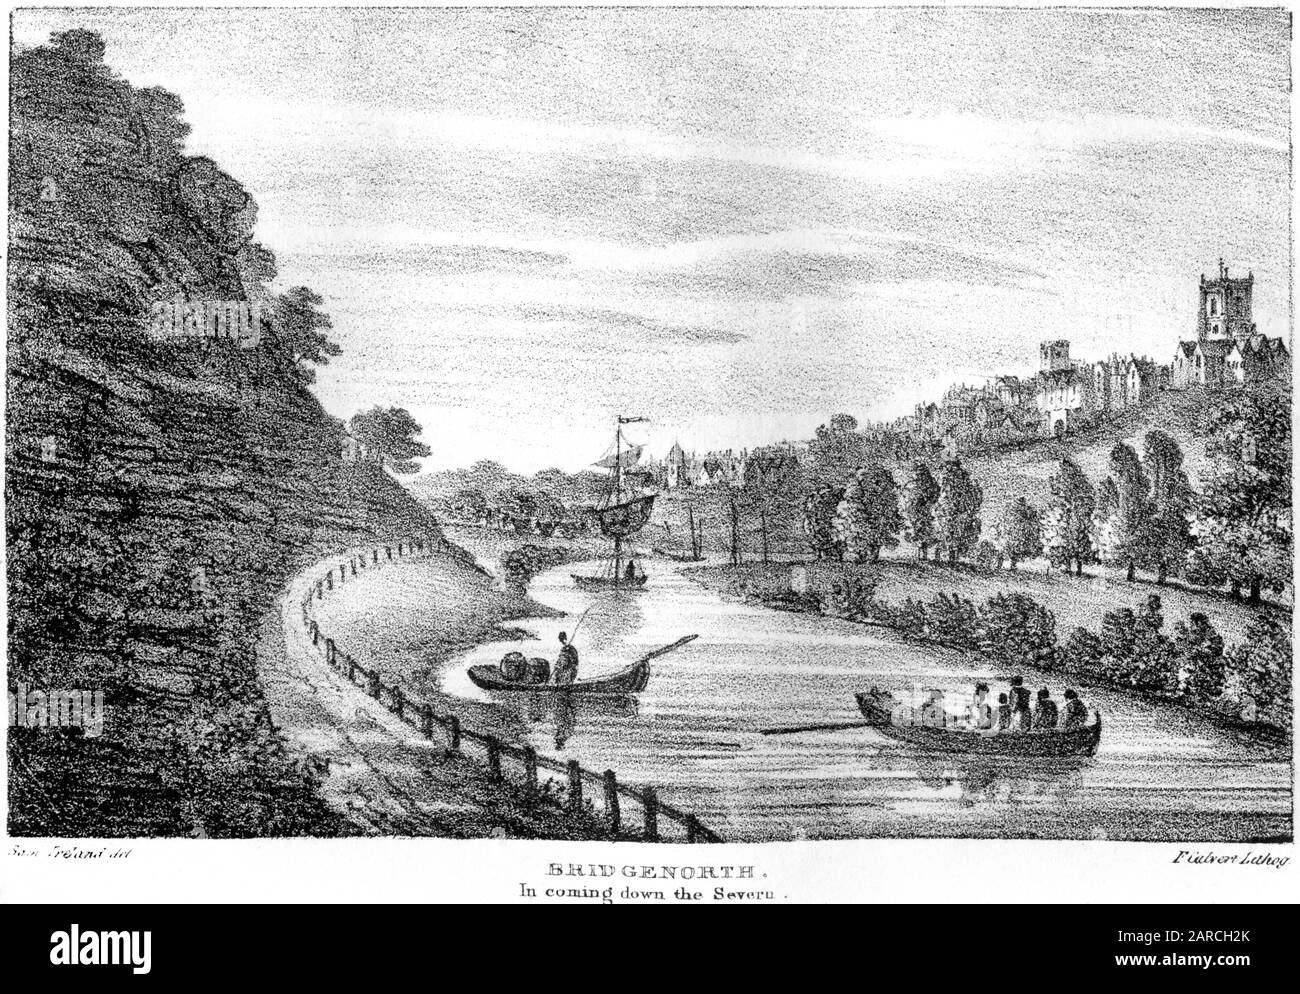 Une lithographie de Bridgenorth (BridgNorth) Dans la descente du Severn numérisé à haute résolution. À partir d'un livre imprimé en 1824. Considéré comme libre de droits d'auteur. Banque D'Images